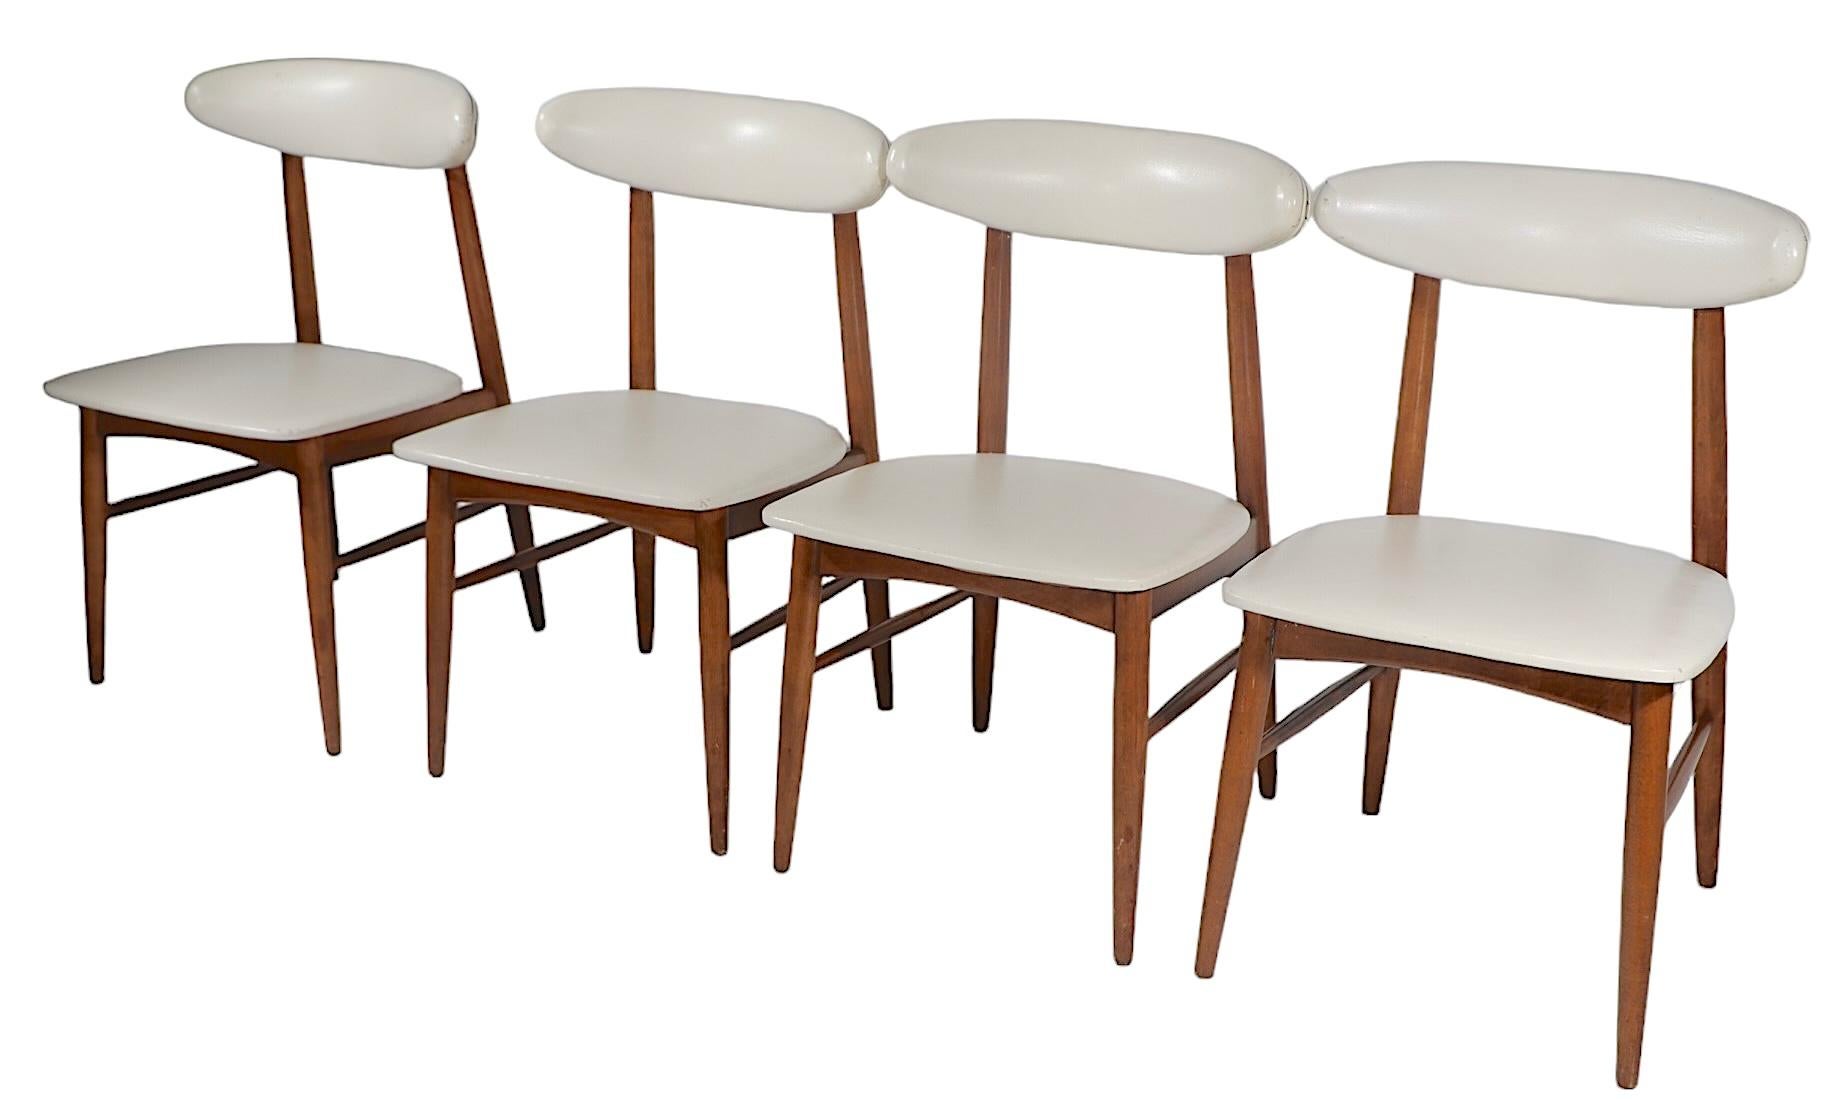 Set da pranzo di metà secolo con quattro sedie e un tavolo da pranzo.
Questo  Il set è stato progettato da Viko Baumritter negli anni 1950/1960. È in buone condizioni originali d'epoca e presenta alcuni segni dell'età e dell'uso, come da rapporto